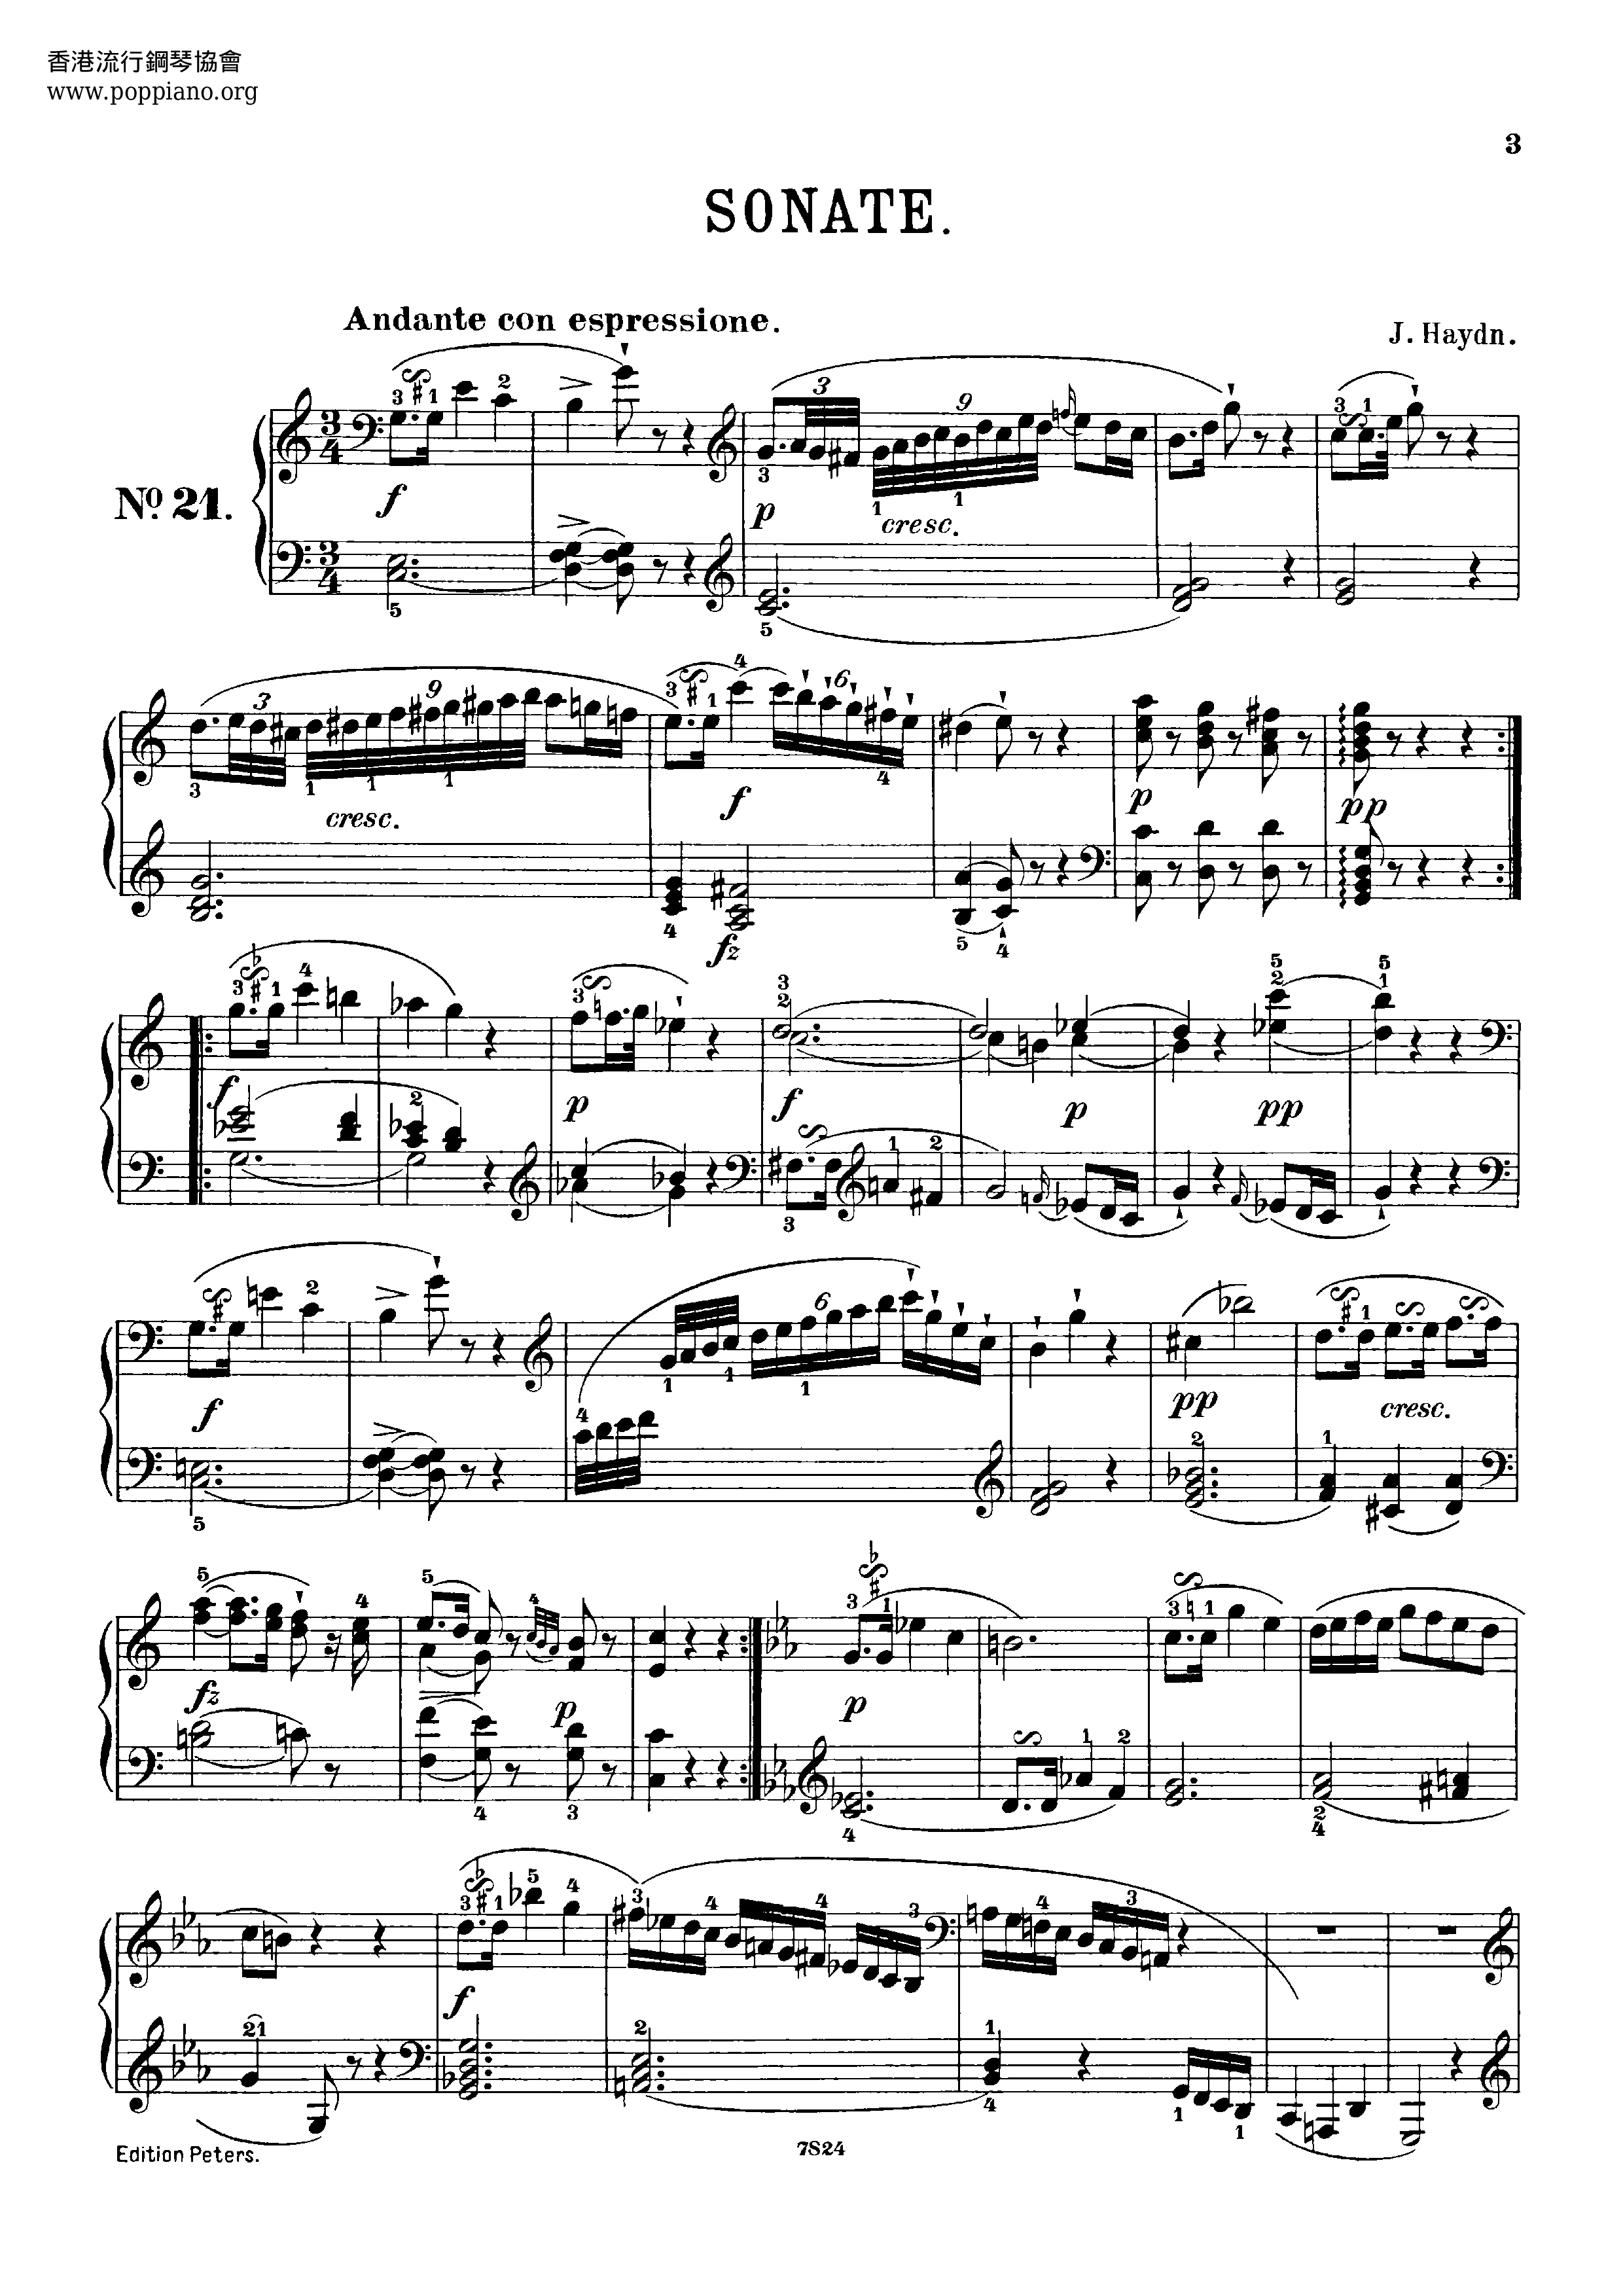 Piano Sonata No. 60 in C Major, Hob. XVI:50 Score